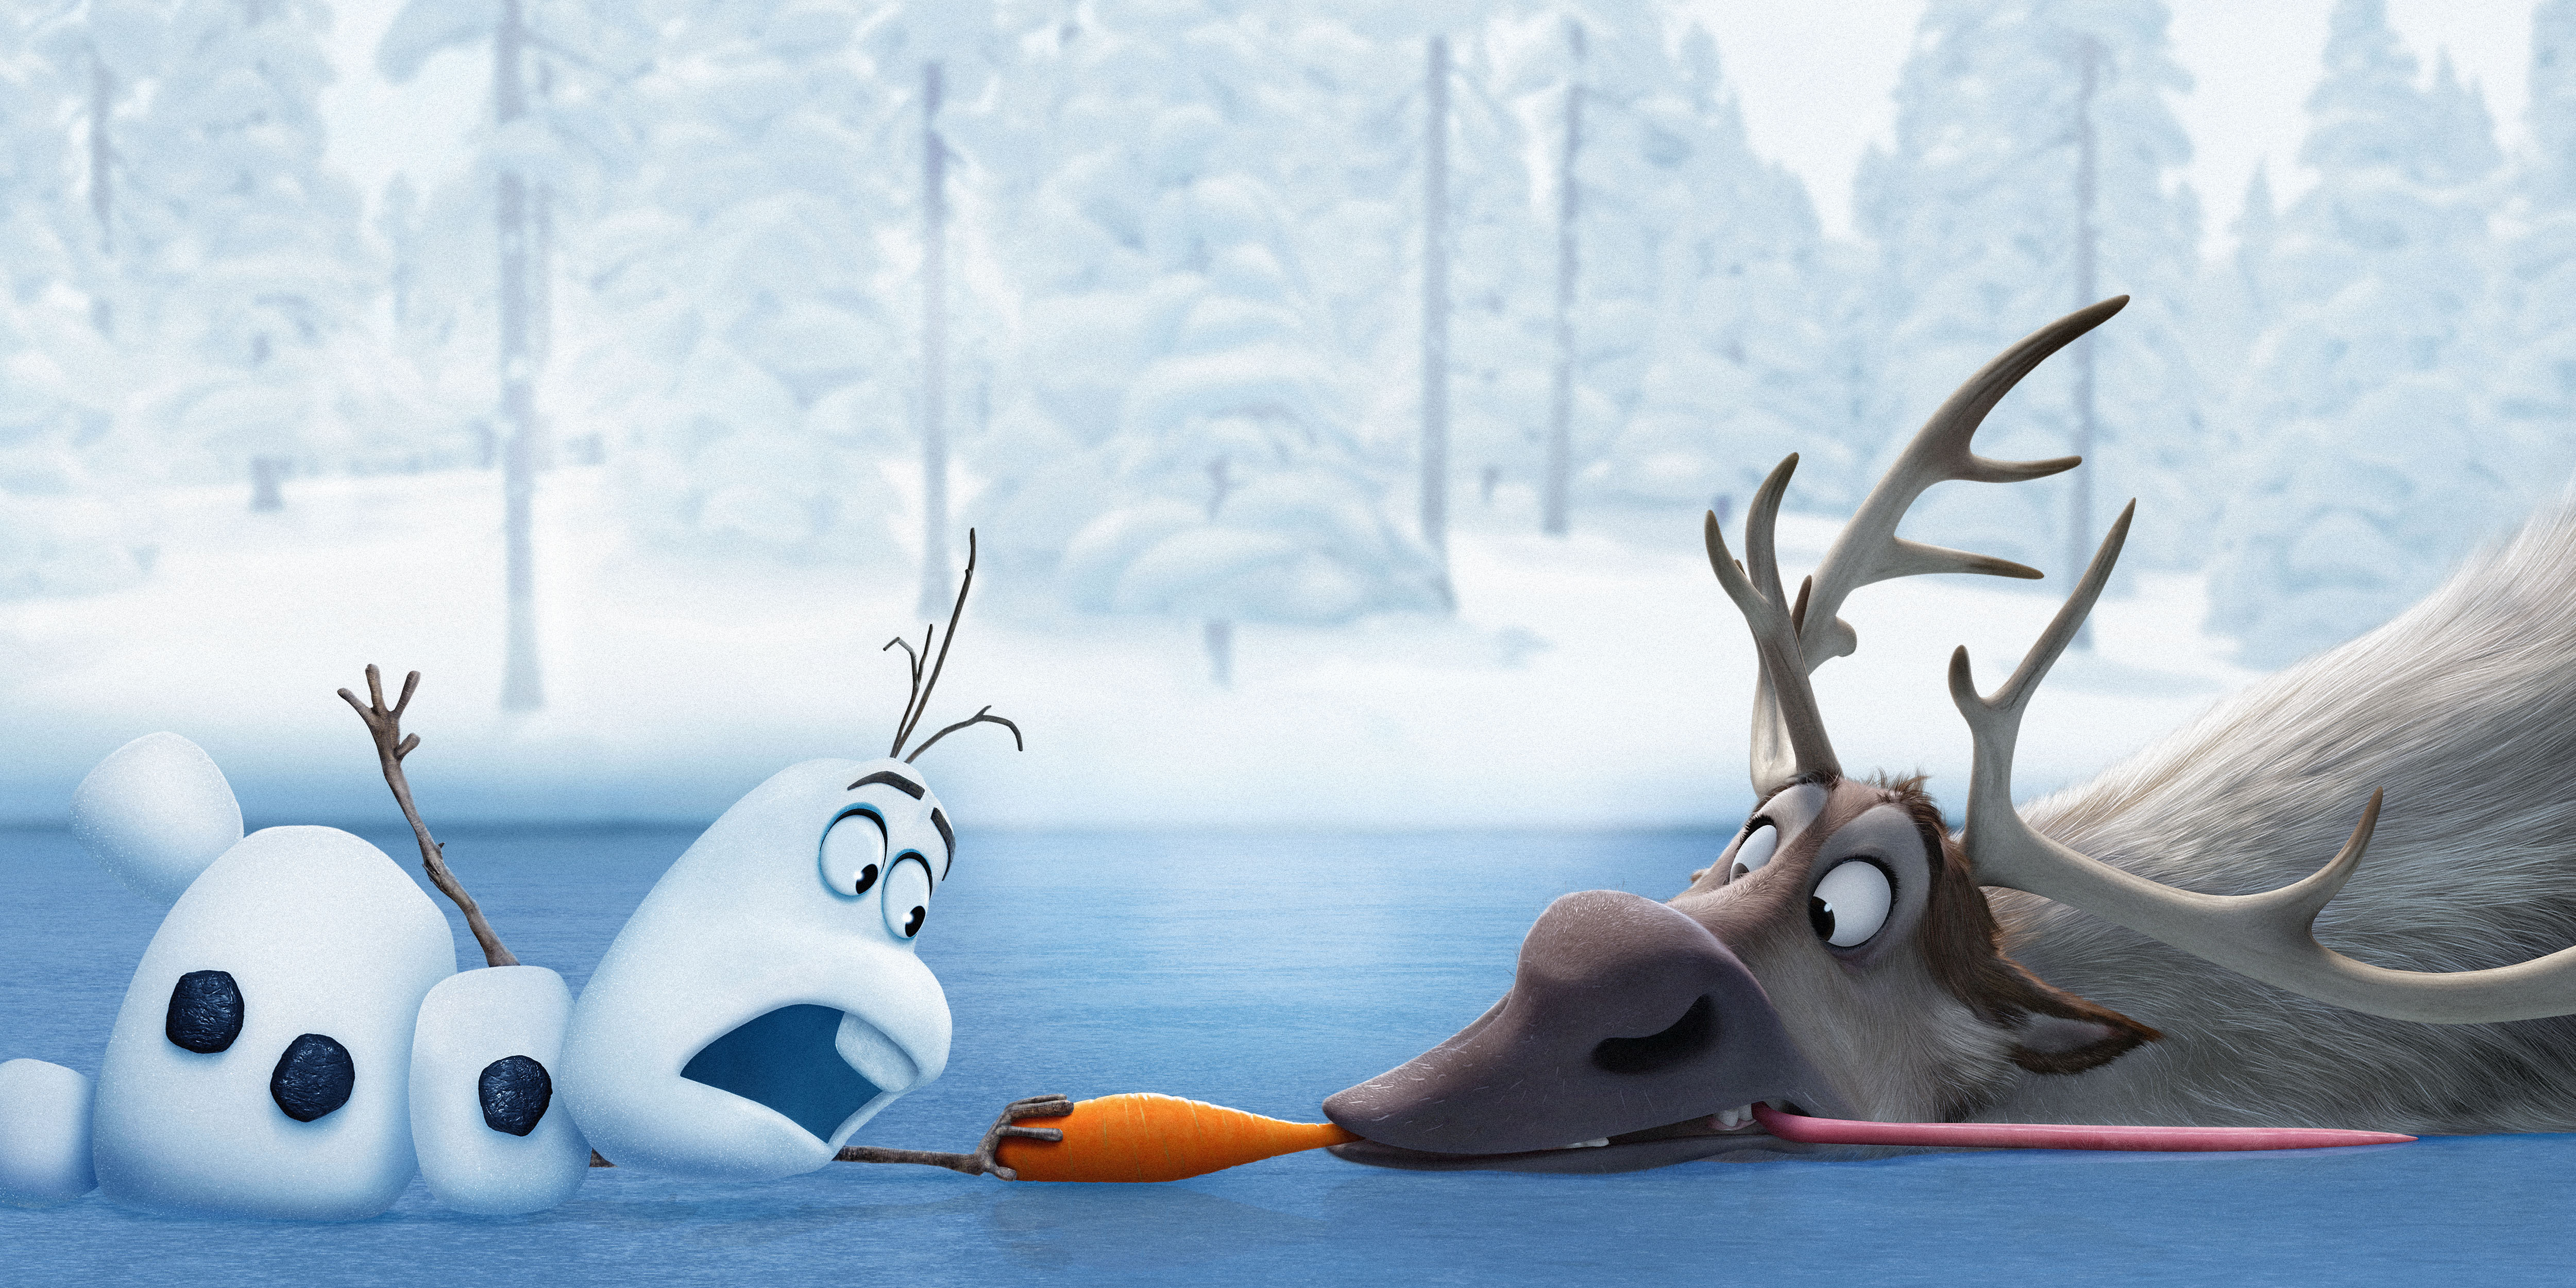 Frozen Juegos Sven Y Olaf Con La Zanahoria Descargar Fondos De